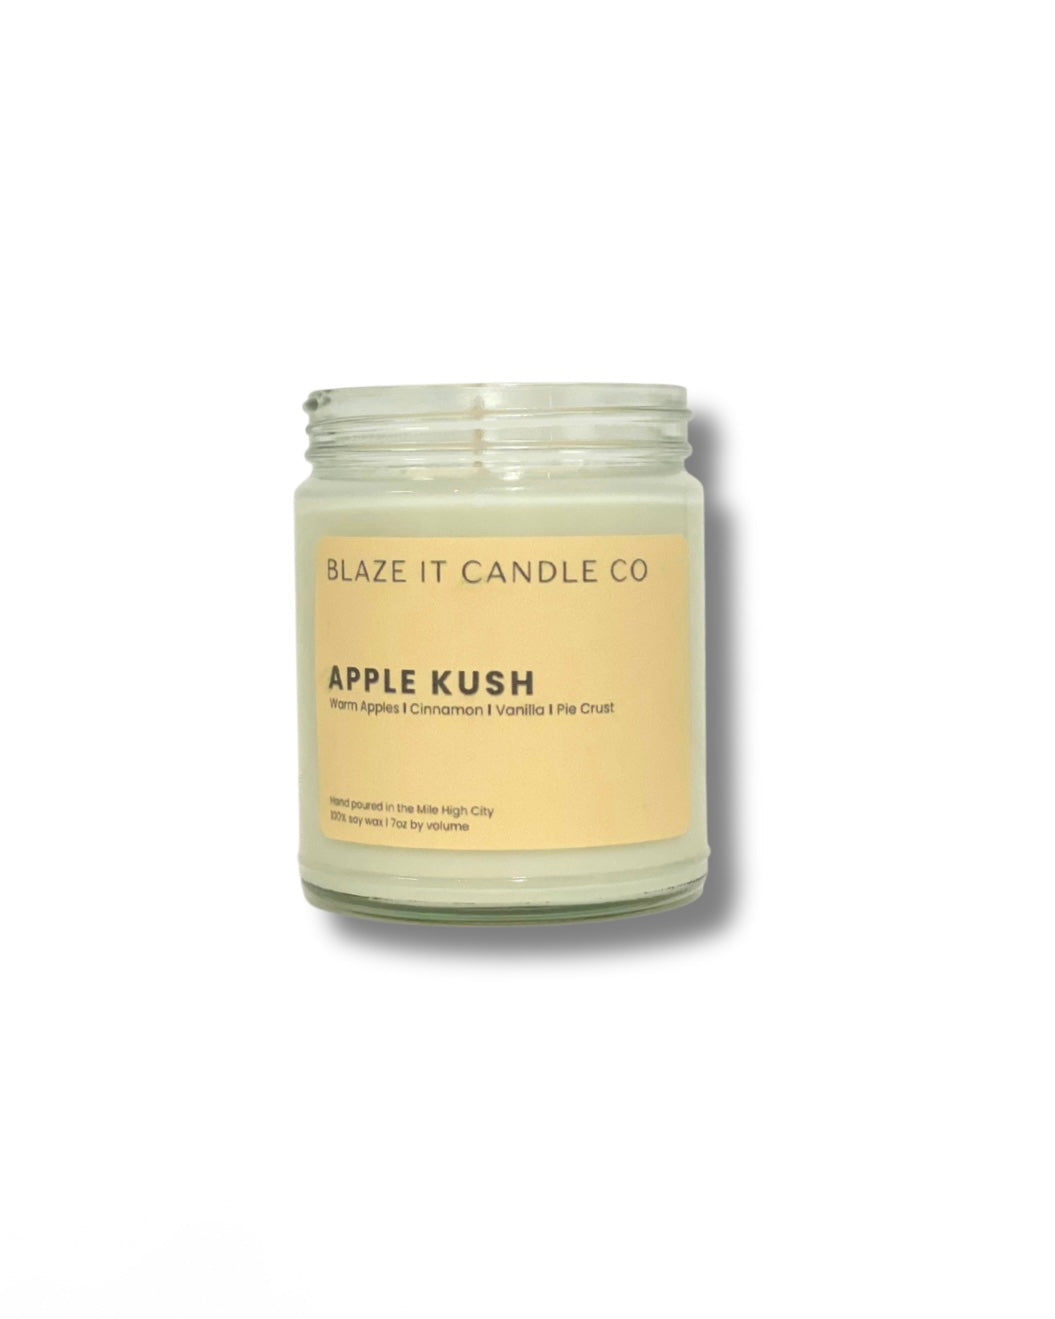 Apple Kush soy candle - Blaze It Candle Co